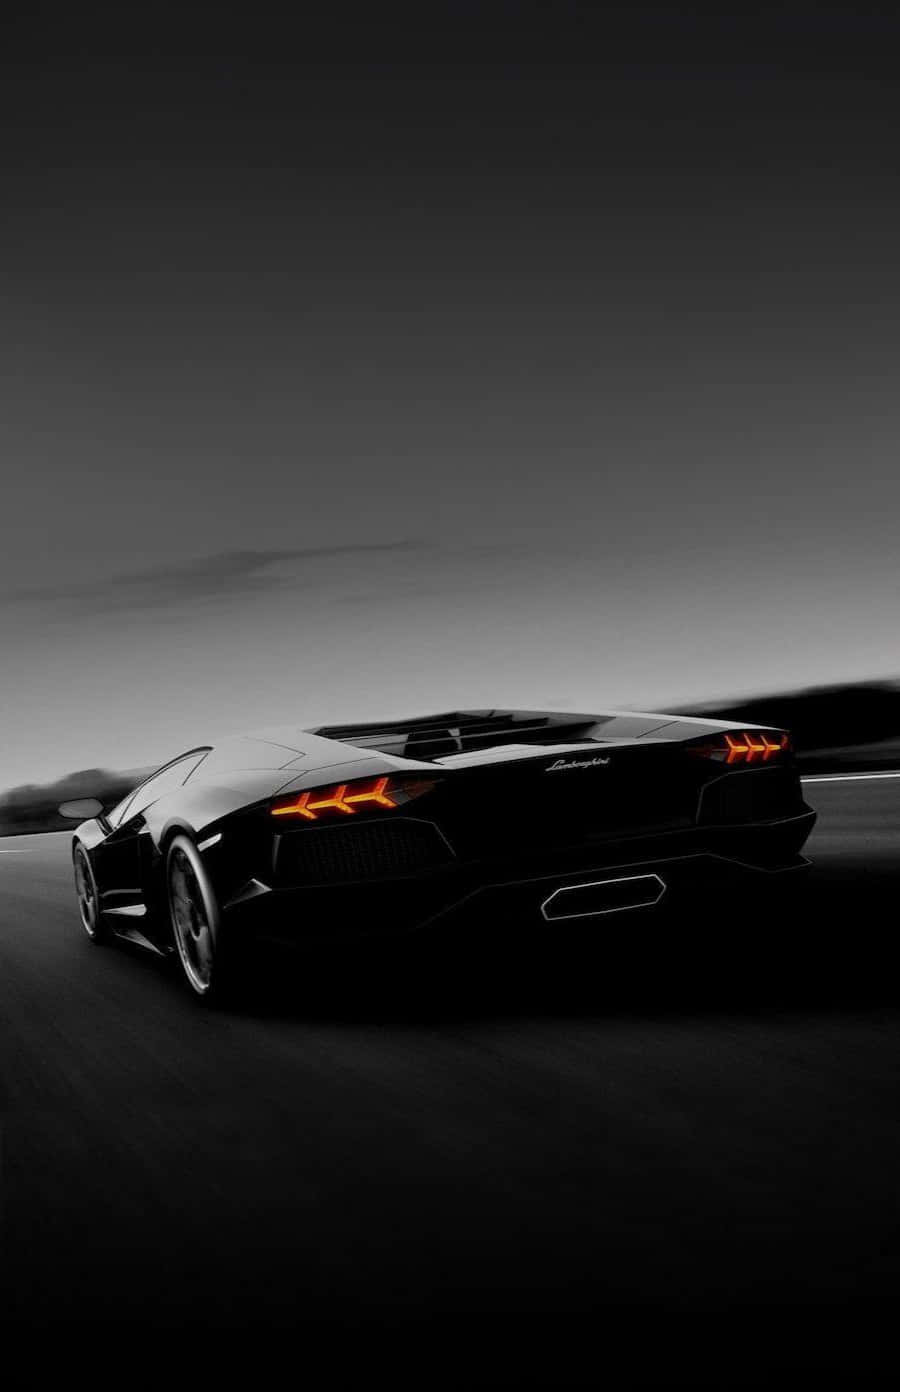 Cruise ned Autobahnen i stil i en sort Lamborghini. Wallpaper